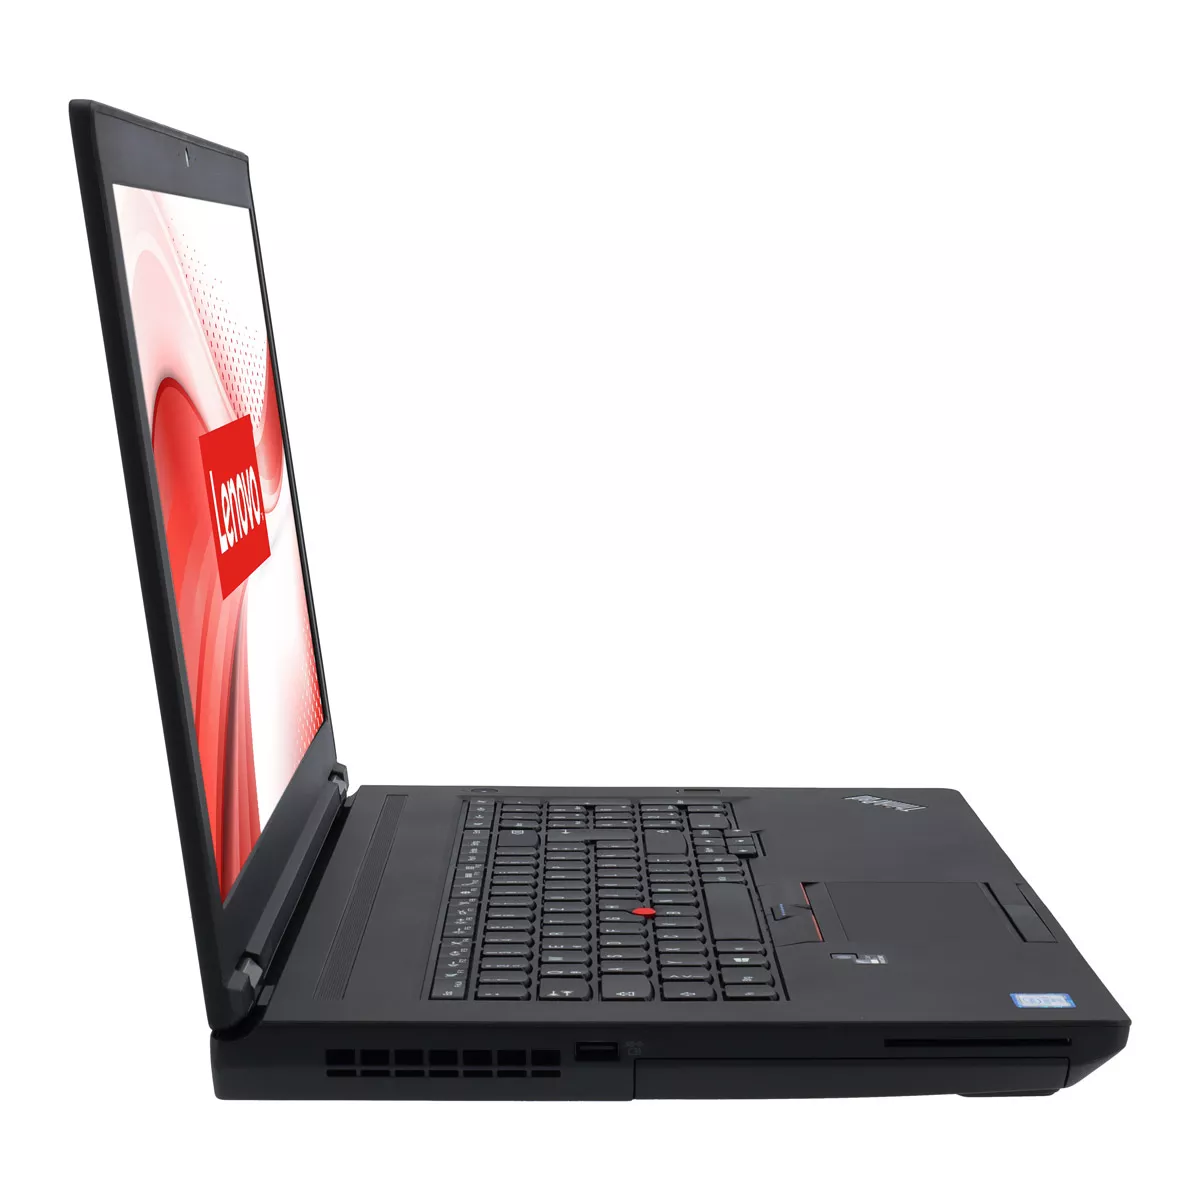 Lenovo ThinkPad P70 Core i7 6700HQ nVidia Quadro M600M 16 GB 500 GB M.2 SSD Webcam A+